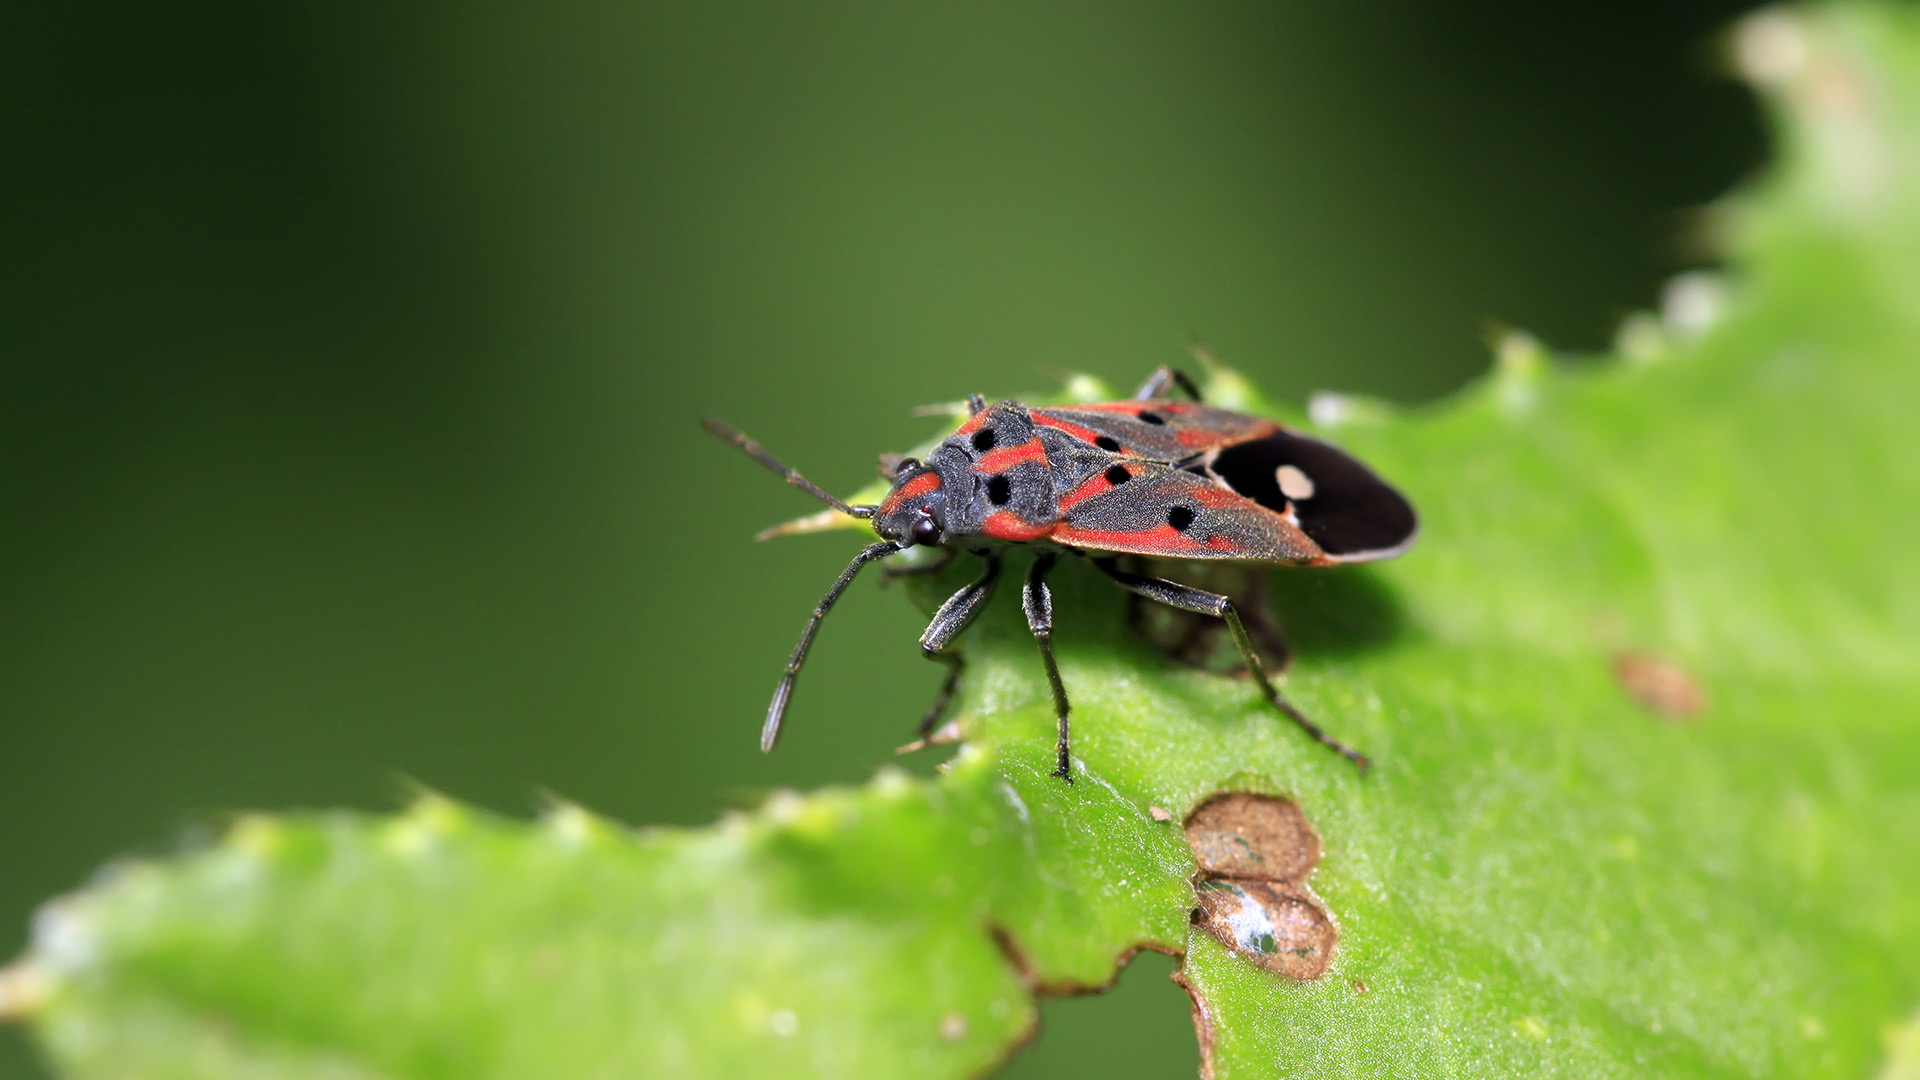 Chinch bug found in a lawn in Dallas, TX.